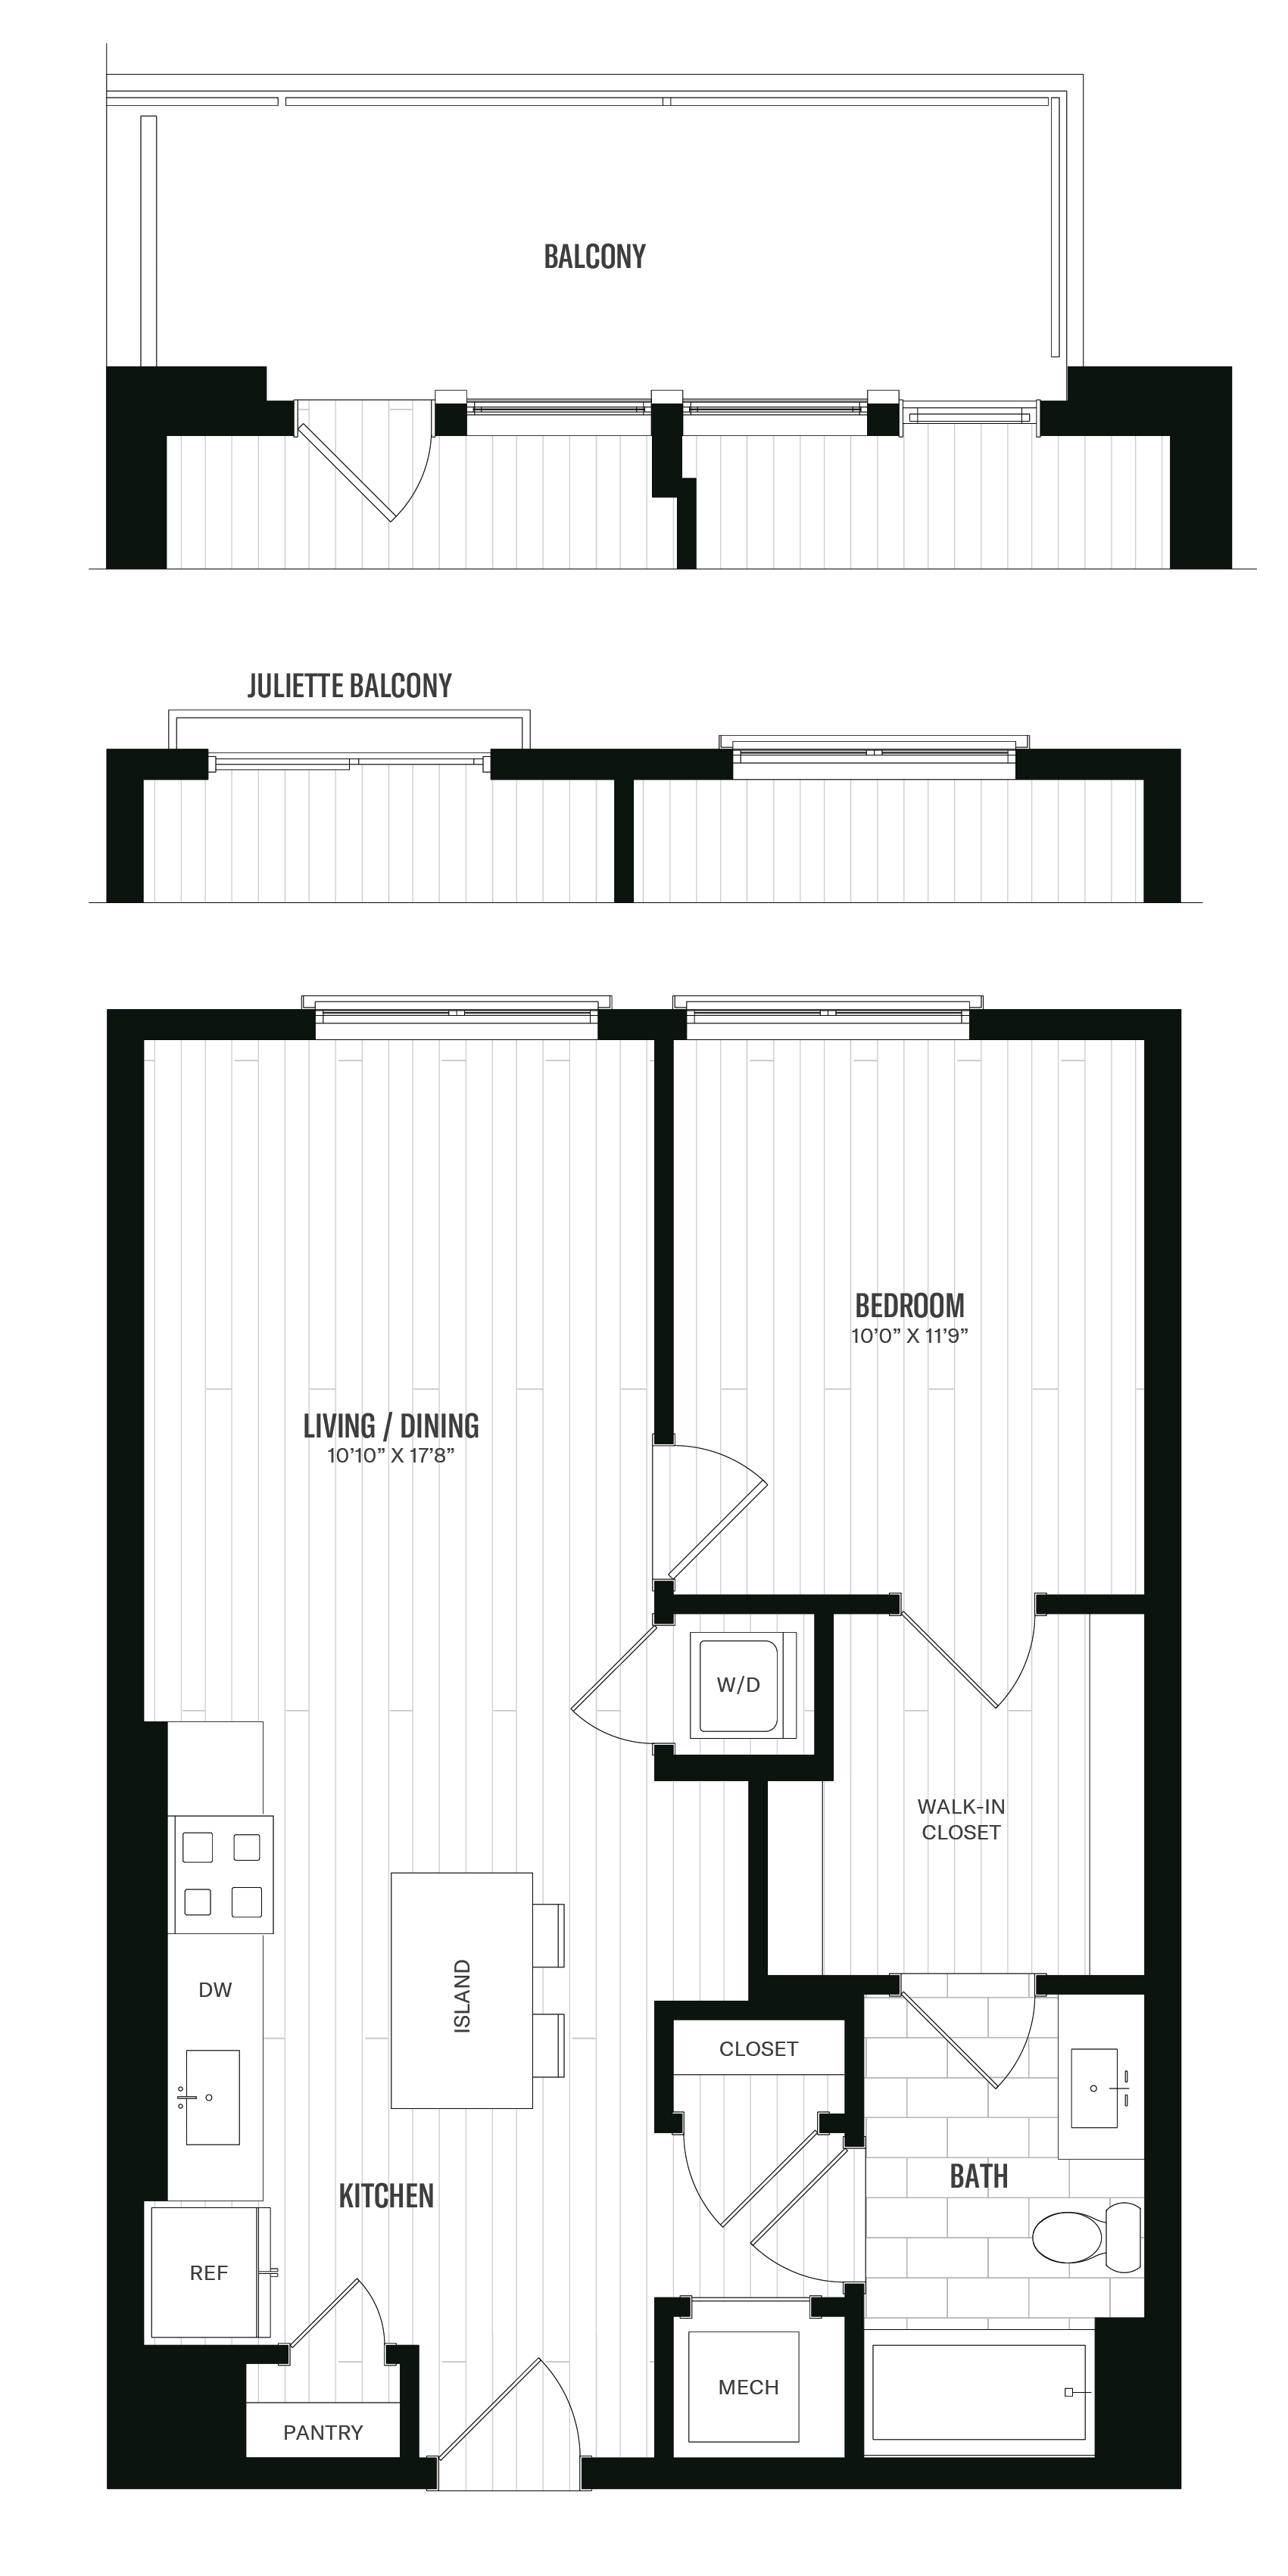 Floorplan image of unit 561